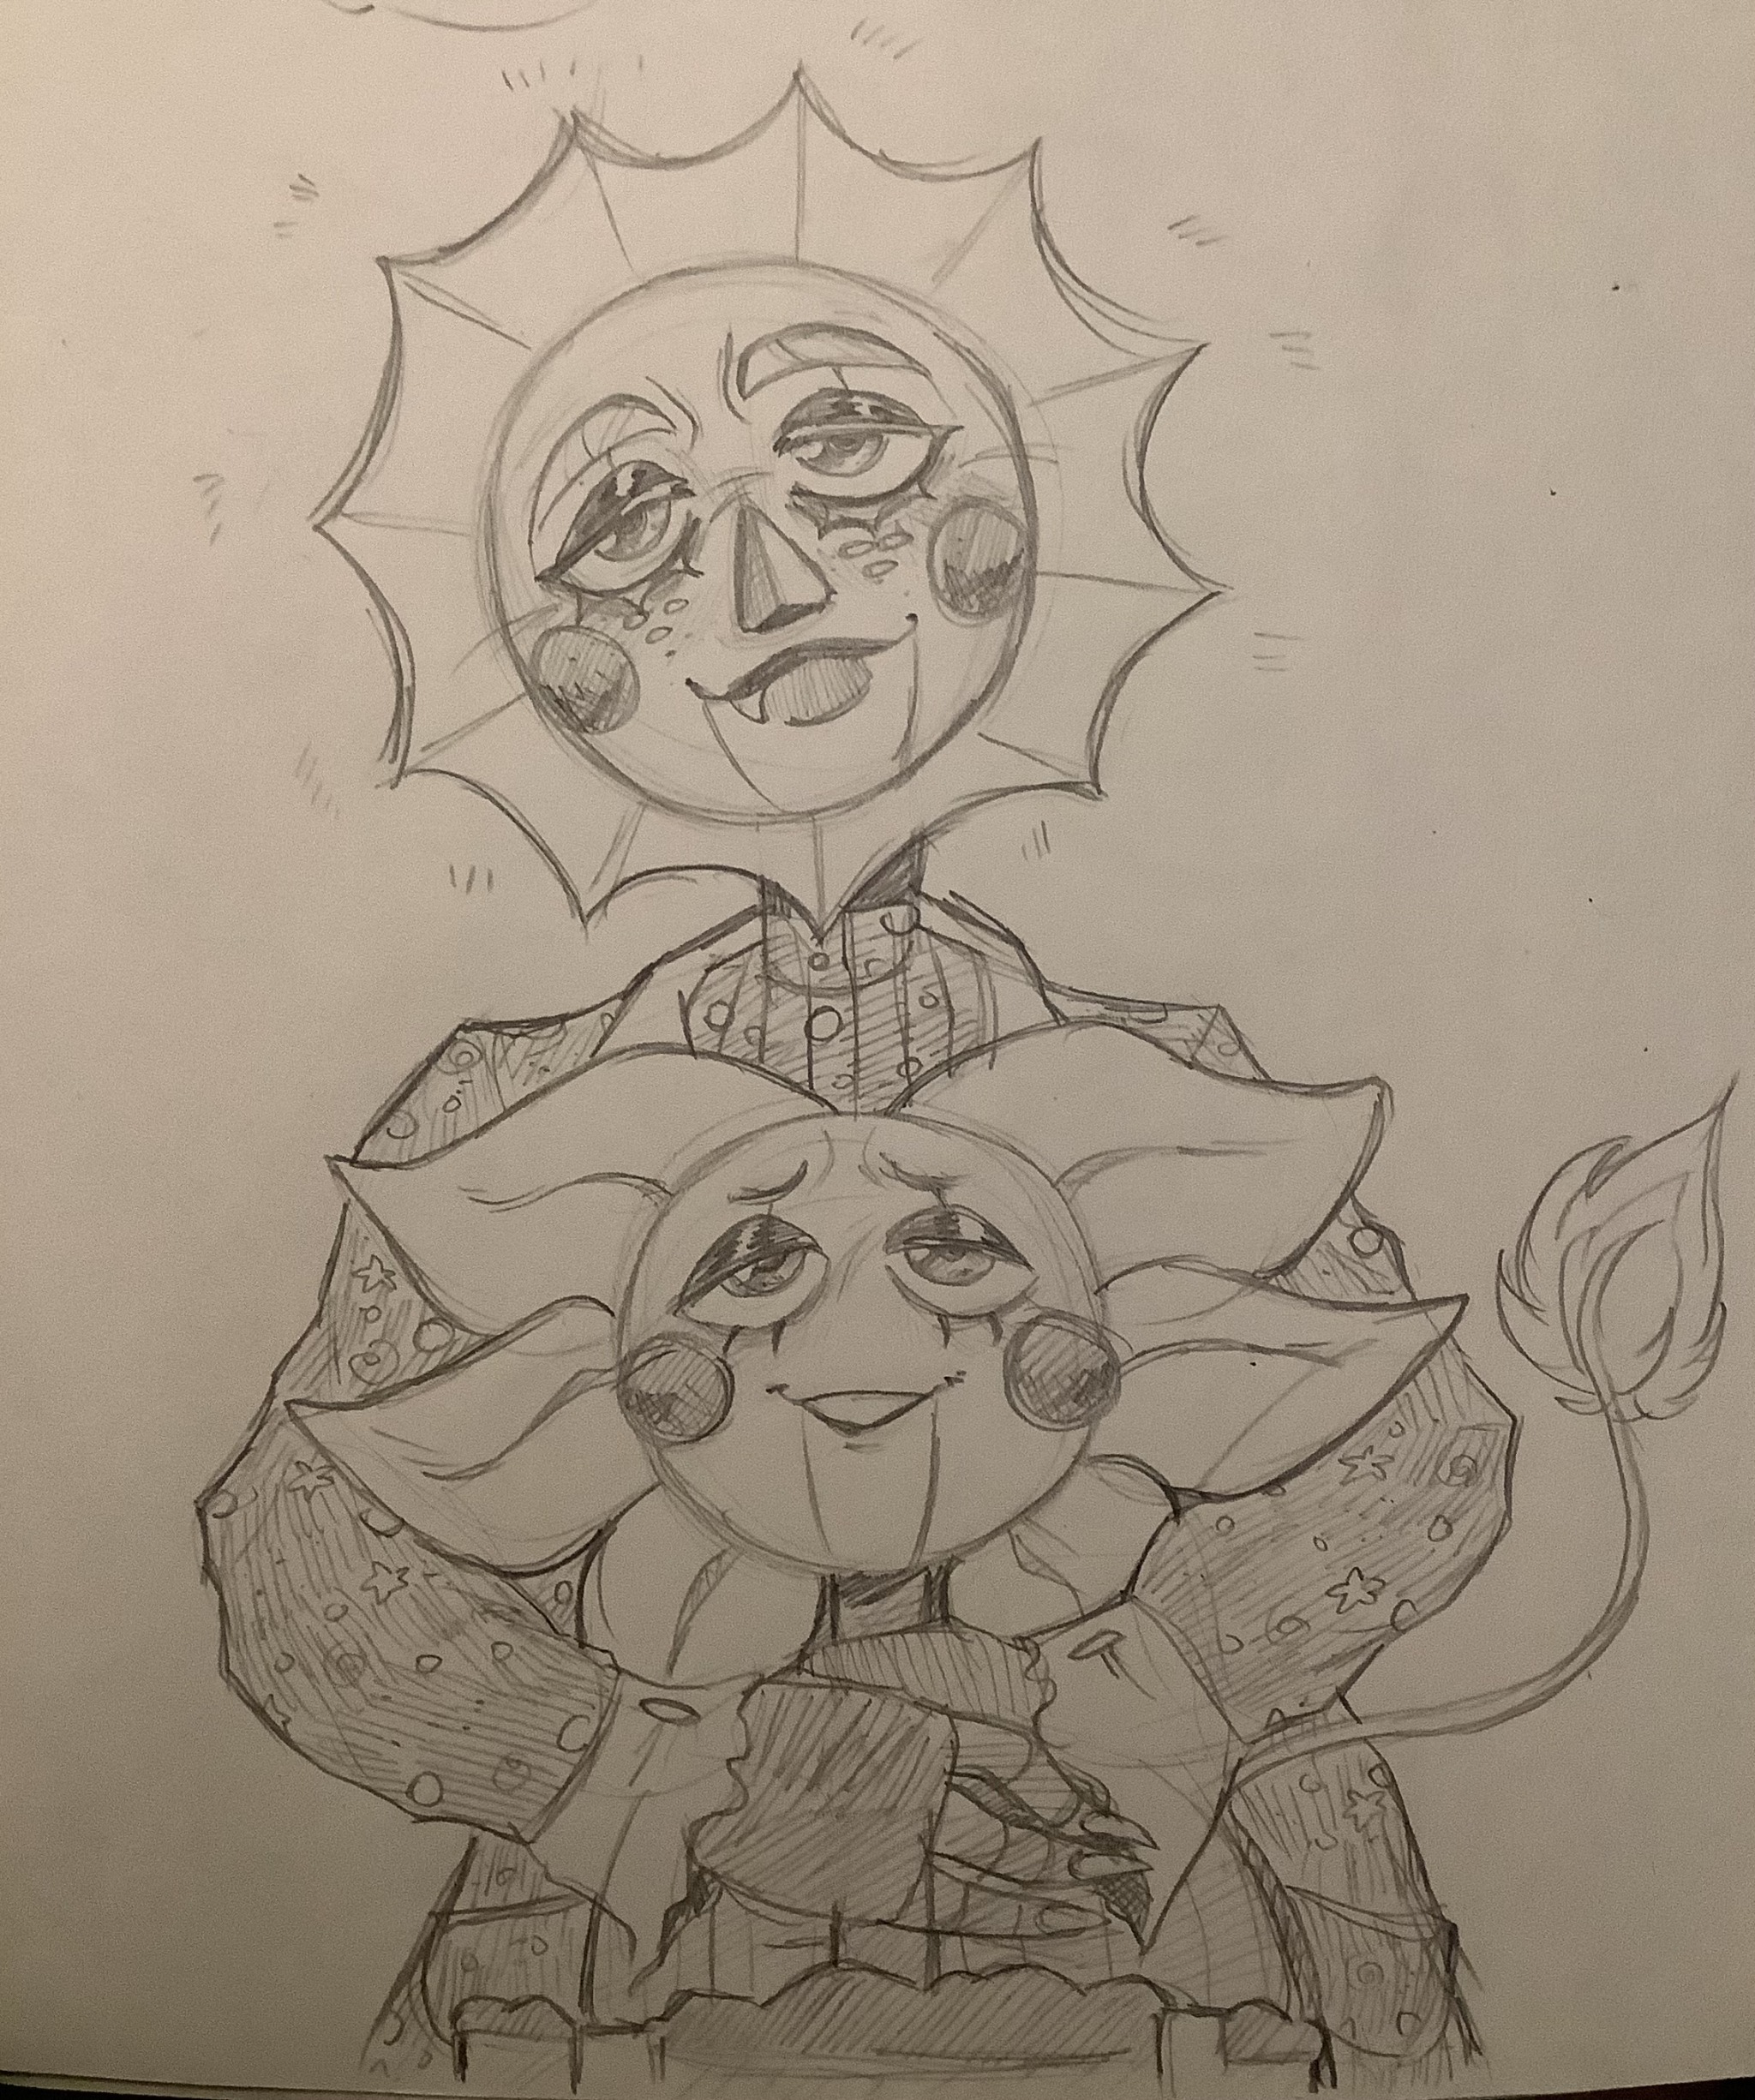 Daisy and Sunny (Harmony and Horror)